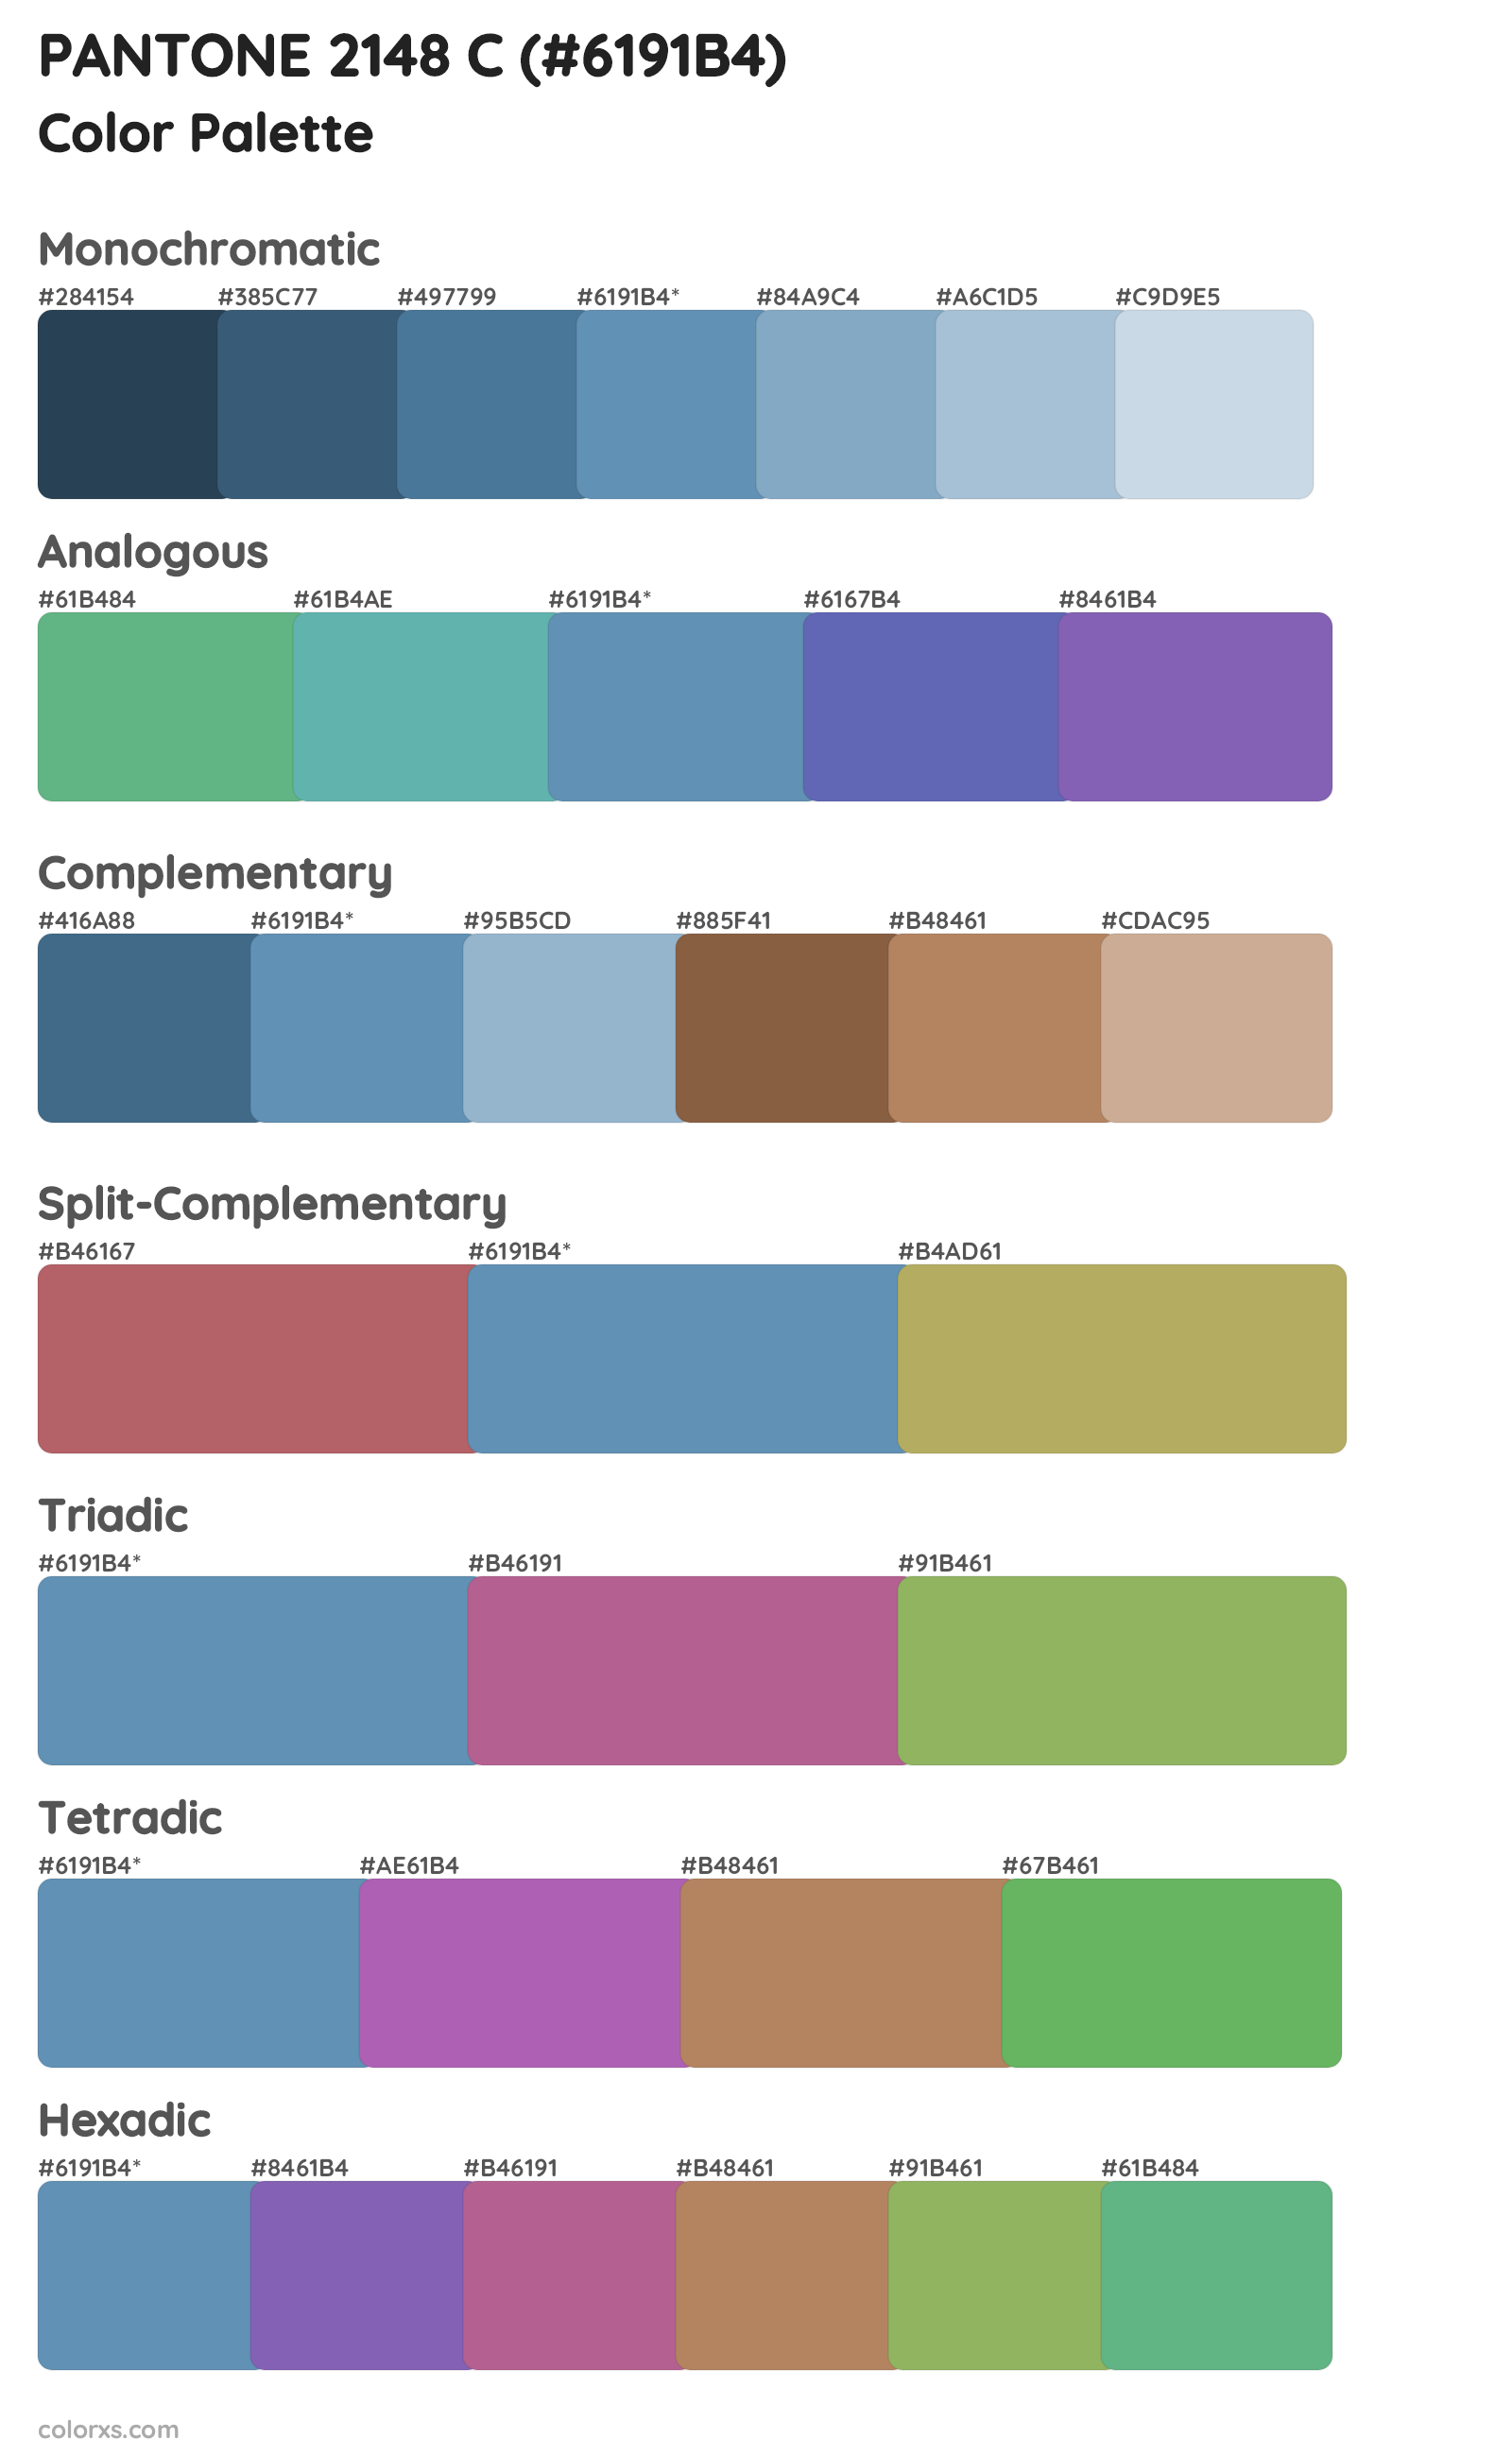 PANTONE 2148 C Color Scheme Palettes